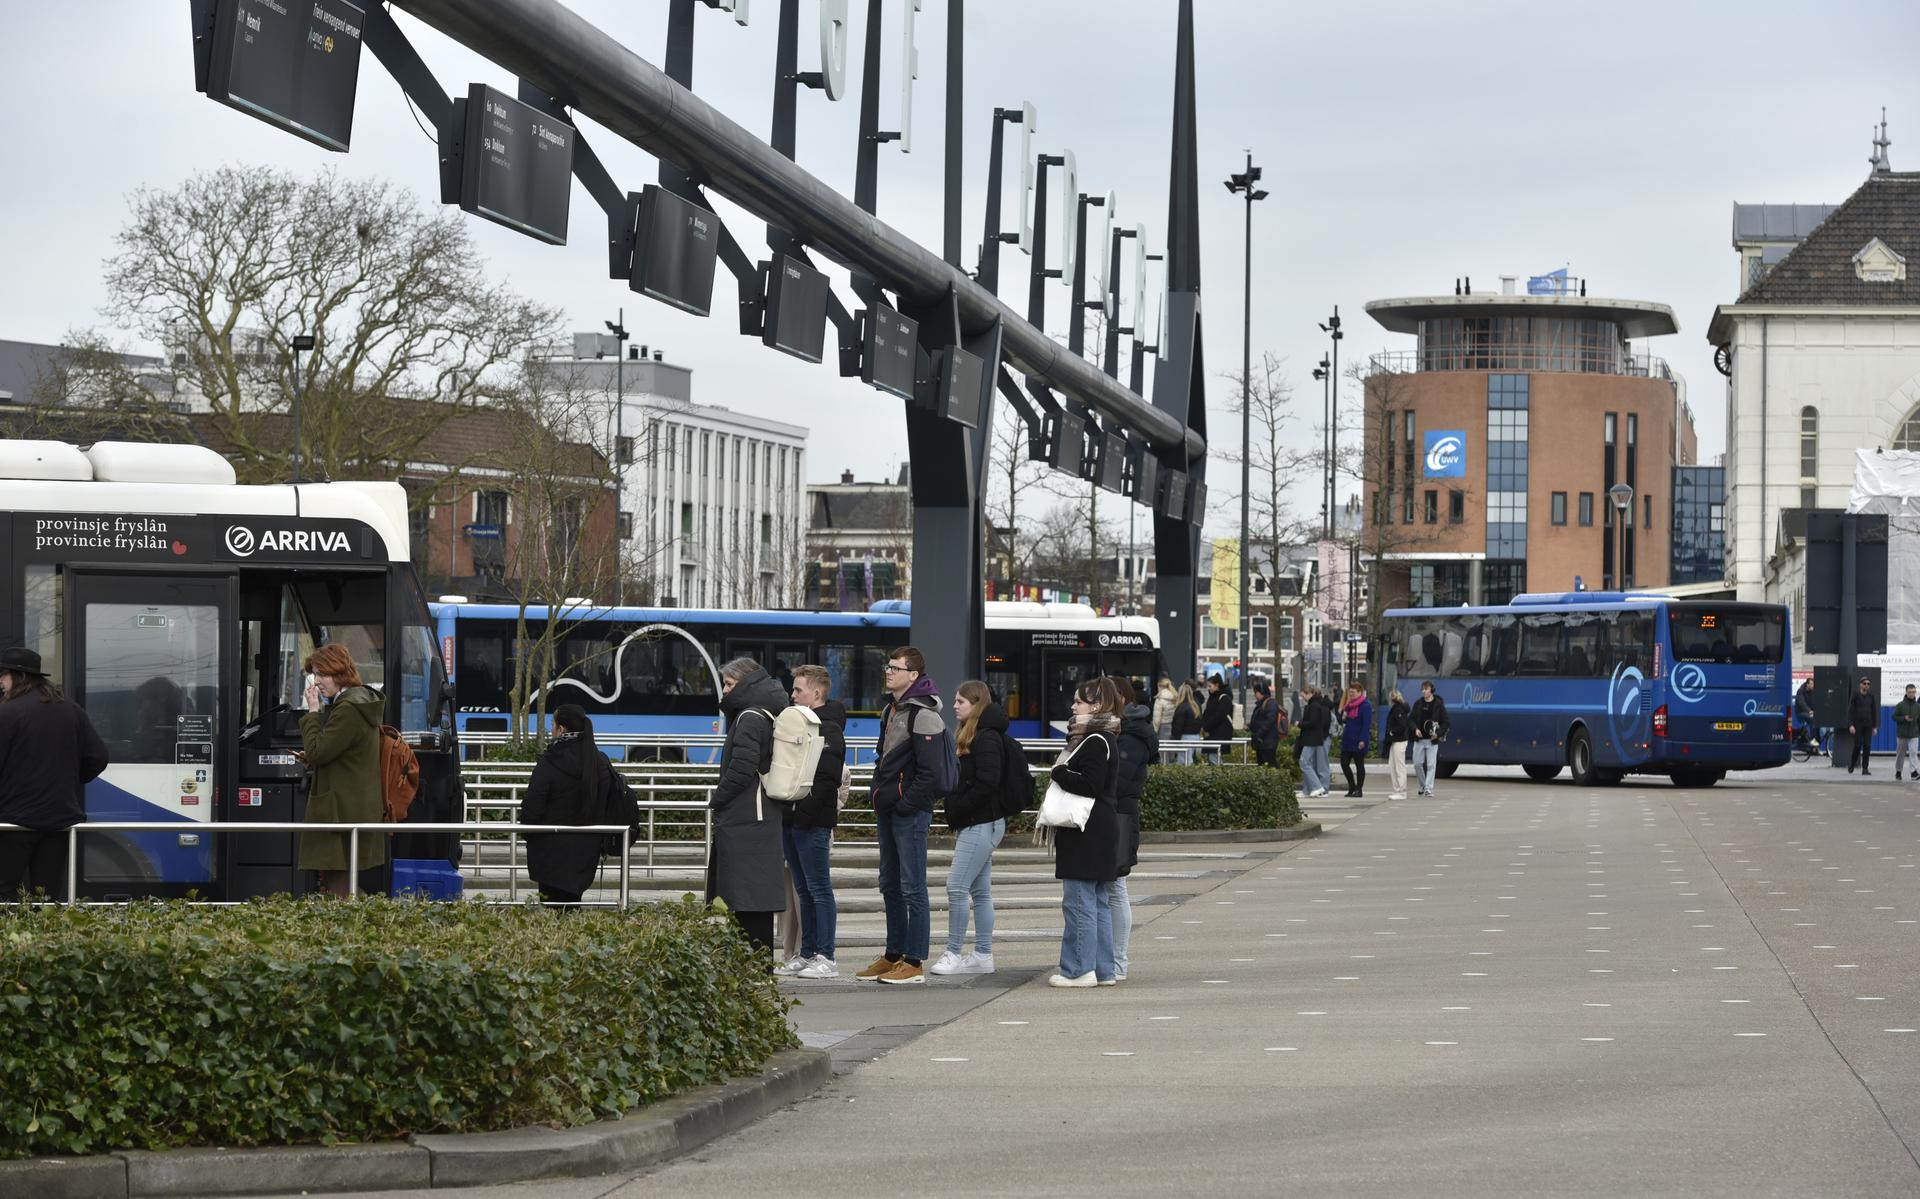 Het busstation van Arriva in Leeuwarden. De openbaar vervoerder uit Heerenveen heeft de nieuwe busconcessie verloren maar vocht dat besluit dinsdag aan. 